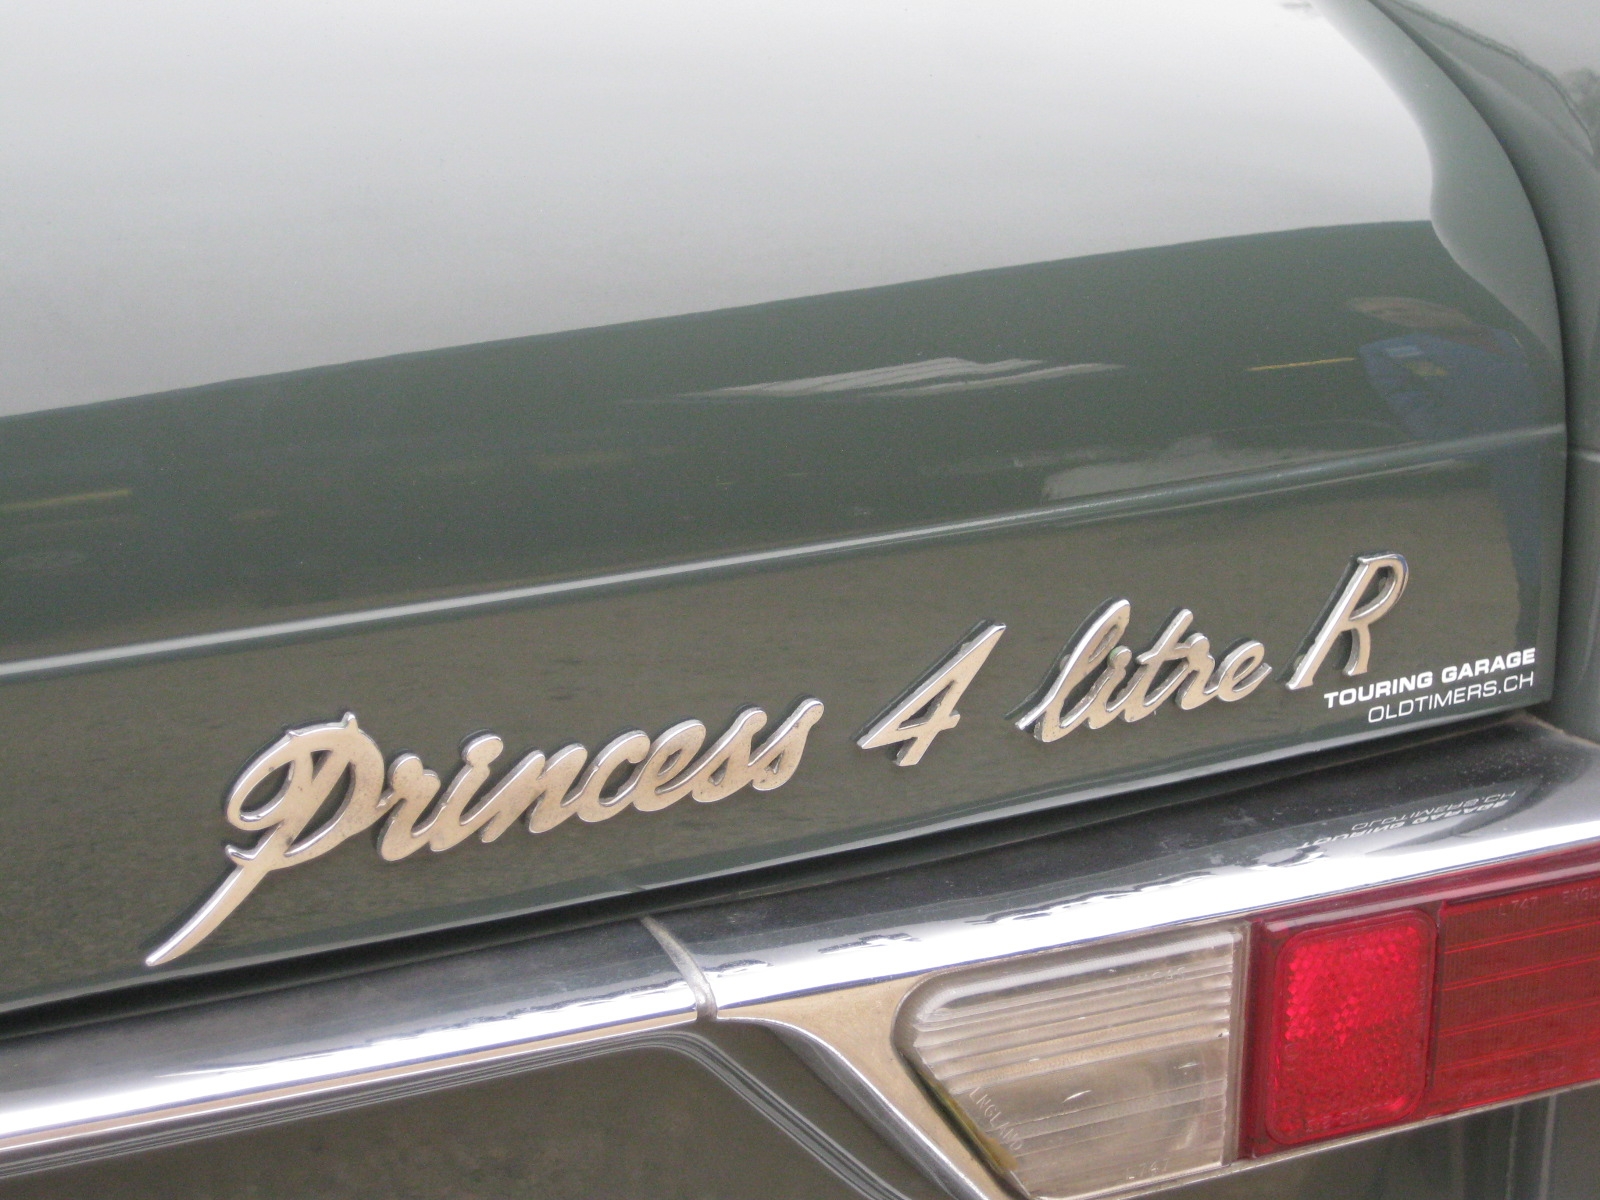 Vanden Plas Princess 4 Litre R Limousine